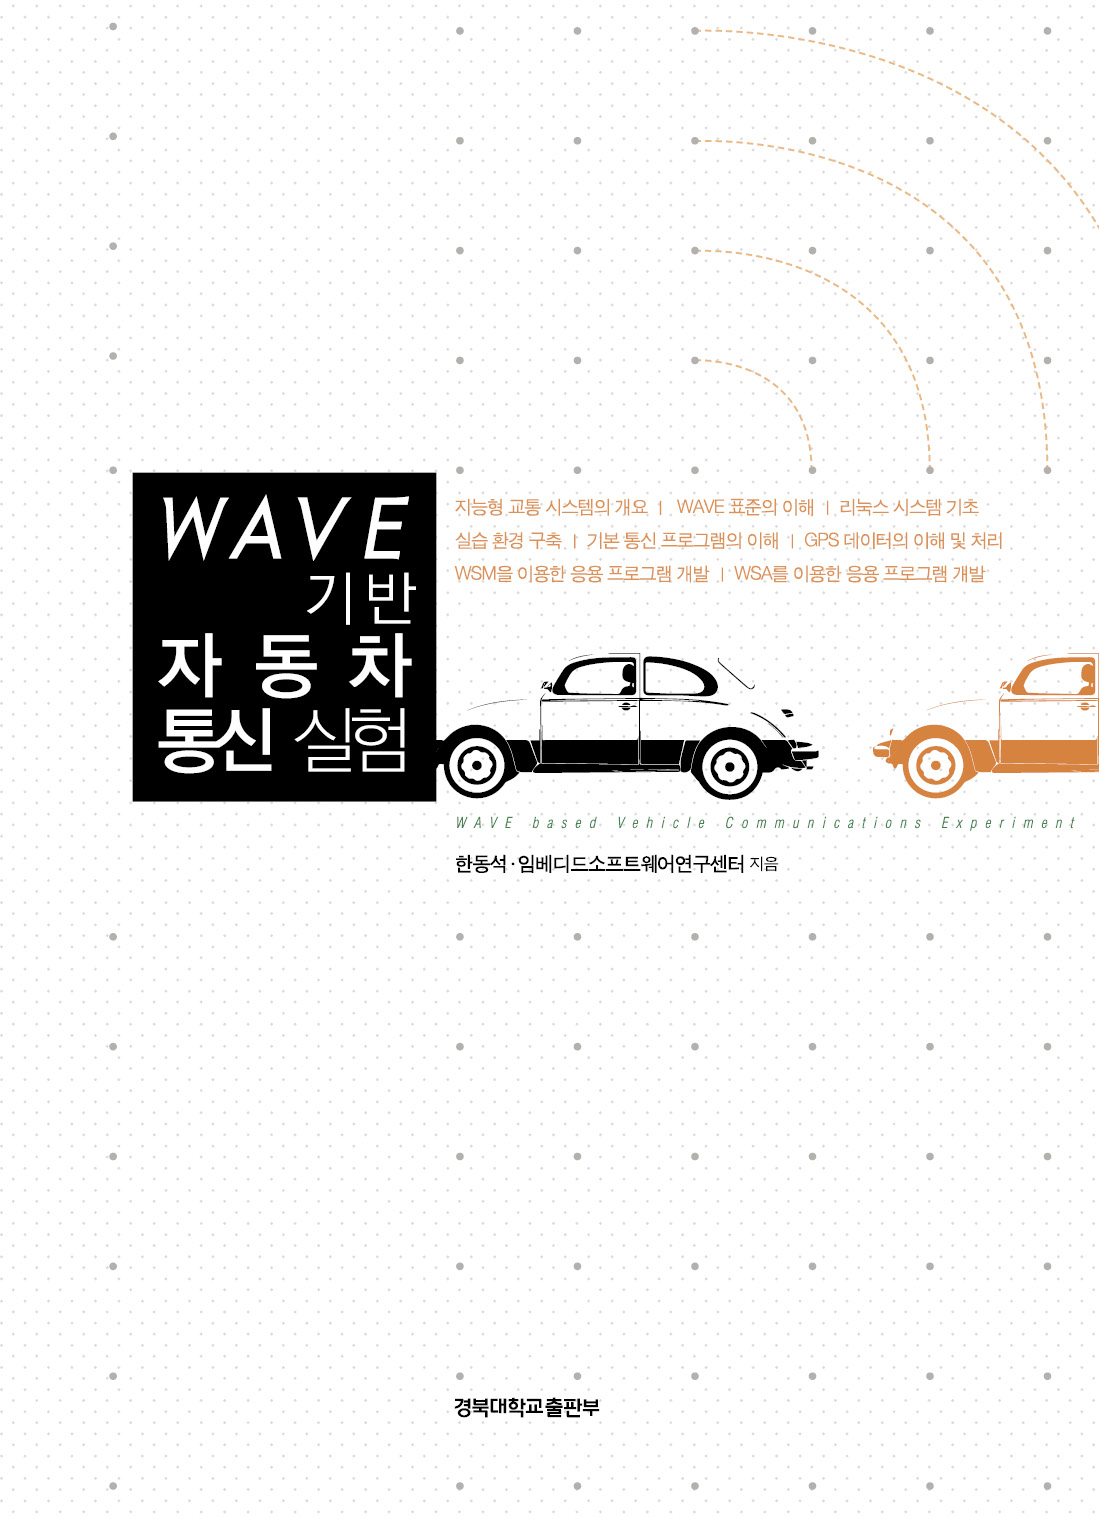 WAVE 기반 자동차 통신 실험